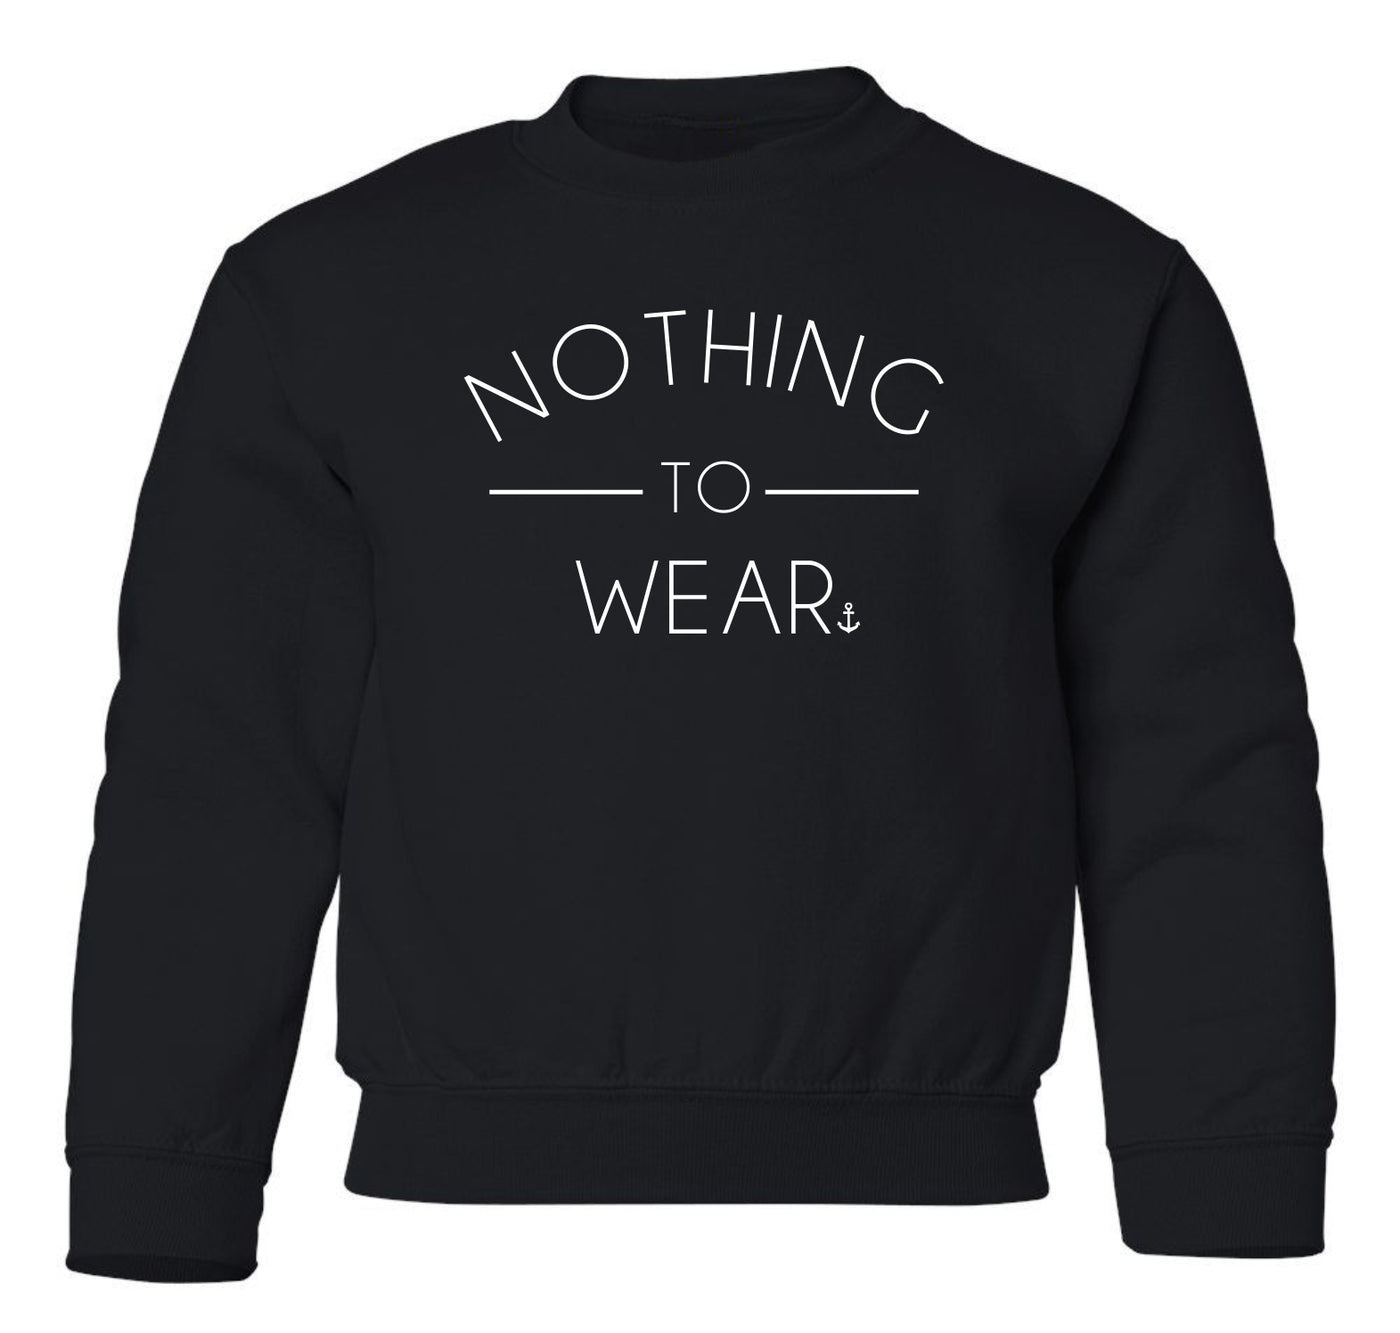 "Nothing To Wear" Toddler/Youth Crewneck Sweatshirt